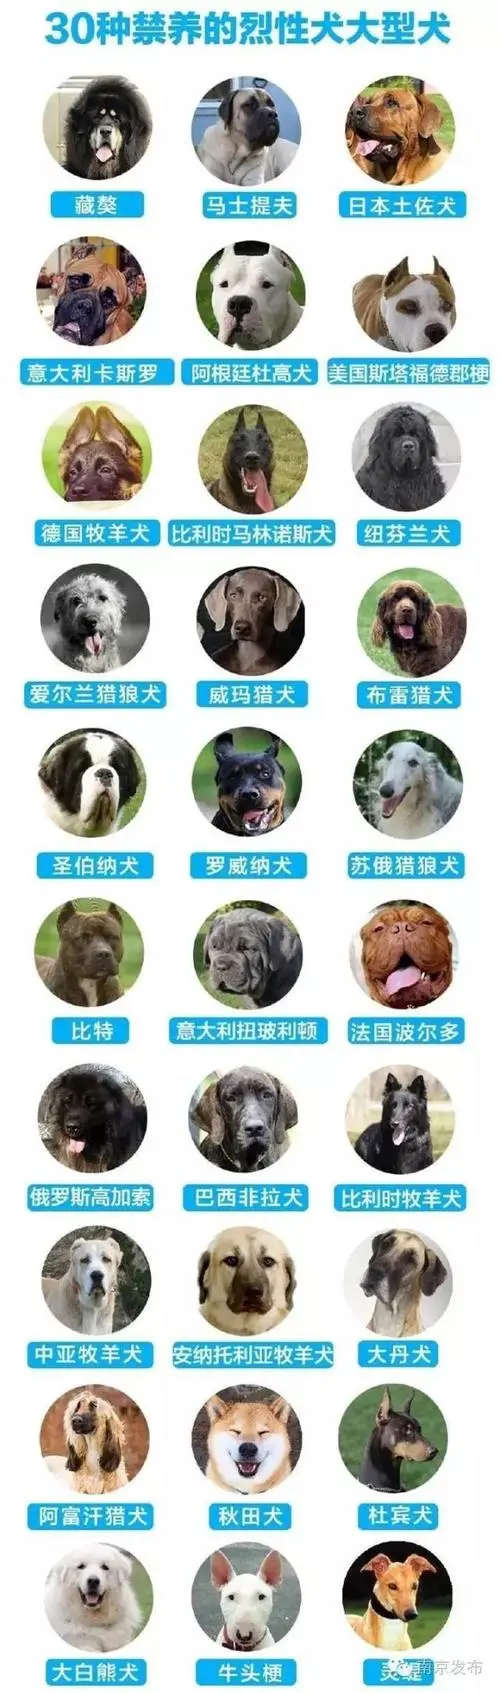 禁养犬种名单 成都禁养犬种名单